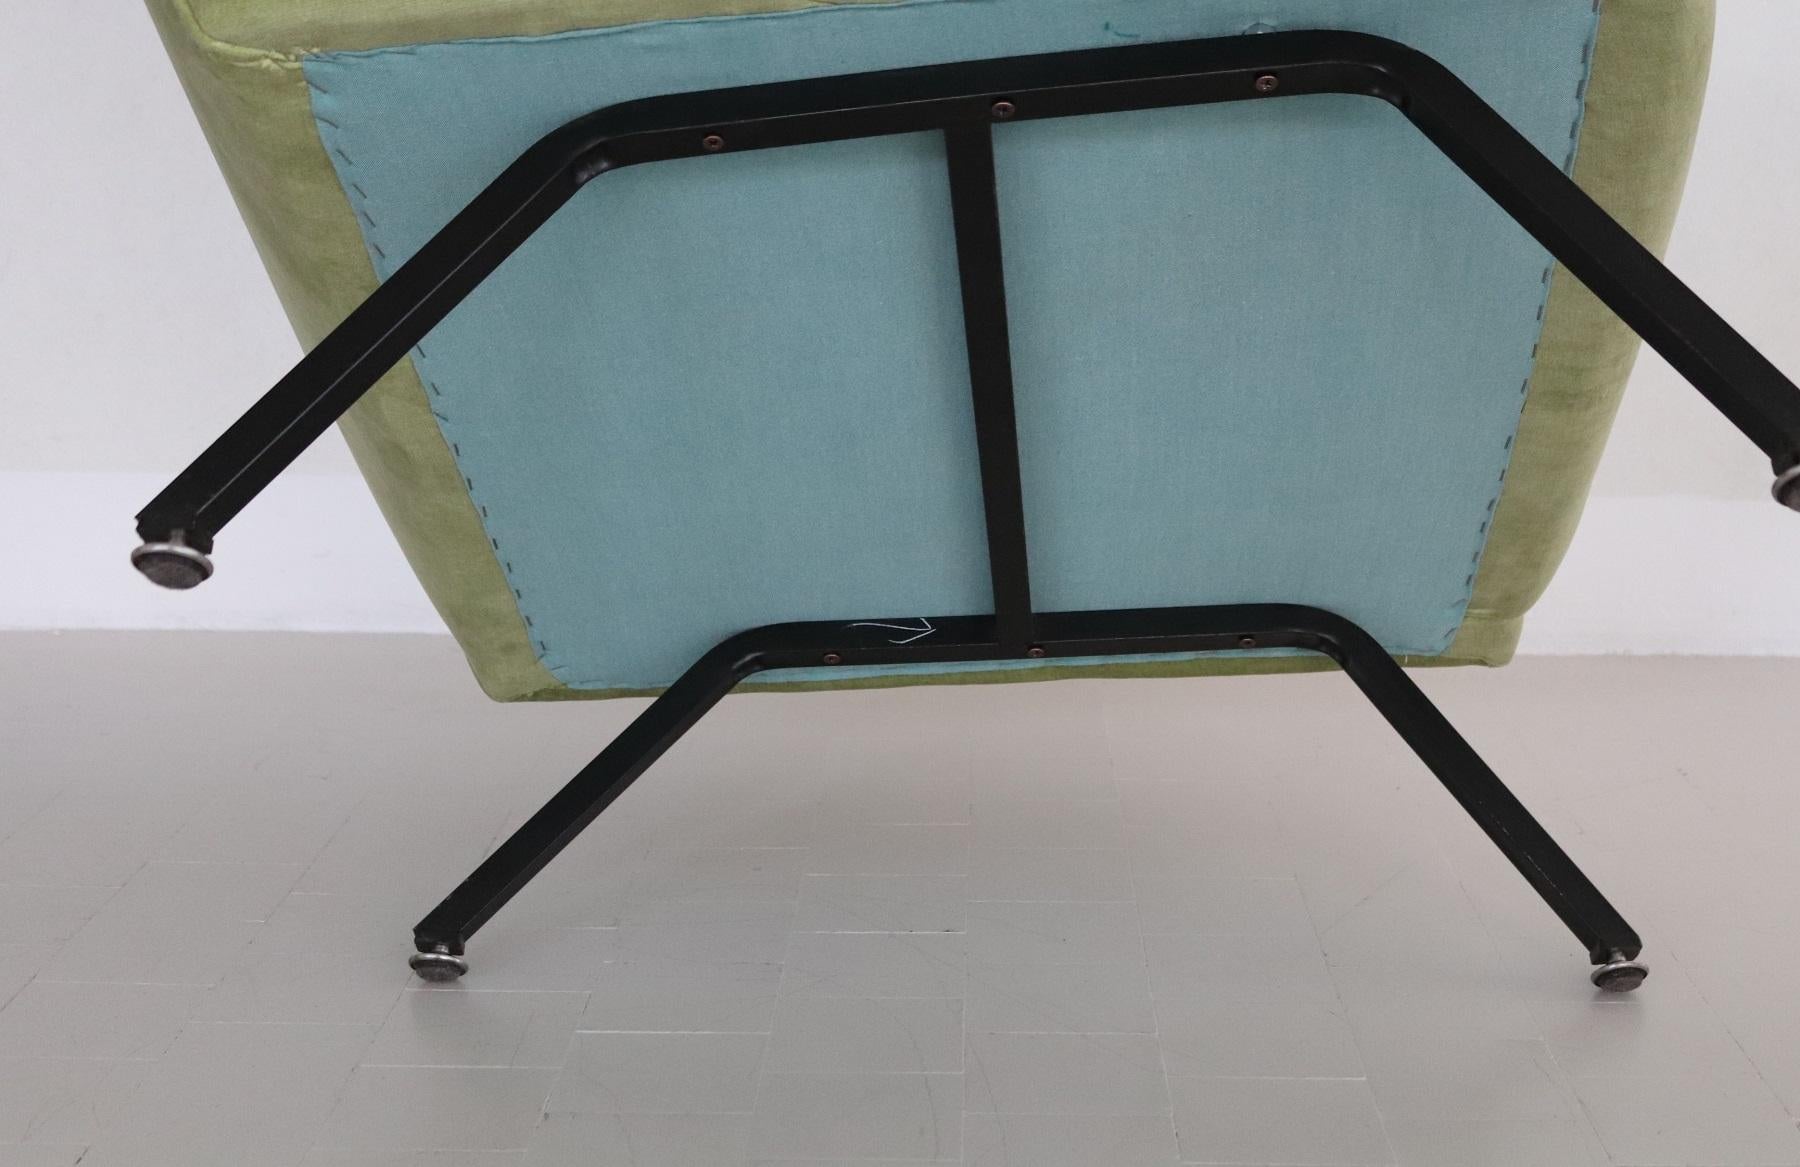 Italian Midcentury Armchairs Re-Upholstered in Green Velvet, 1960s For Sale 7